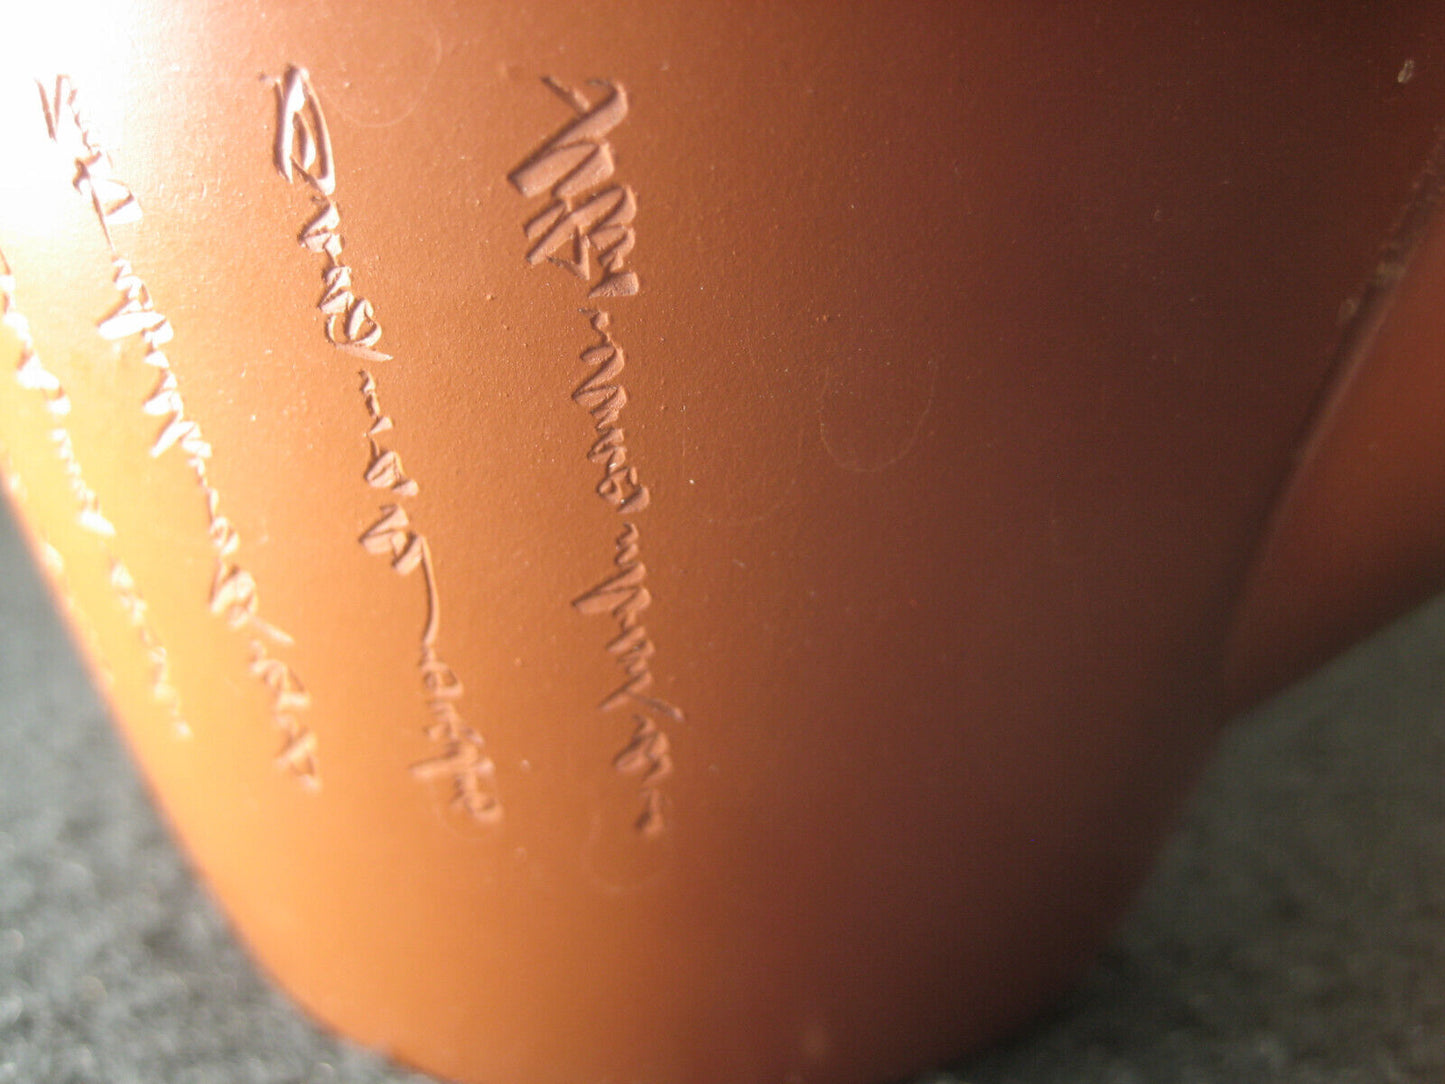 Vintage Signed Kyusu Ceramic Red Clay Tea Pot For Ocha Sencha Genmaicha